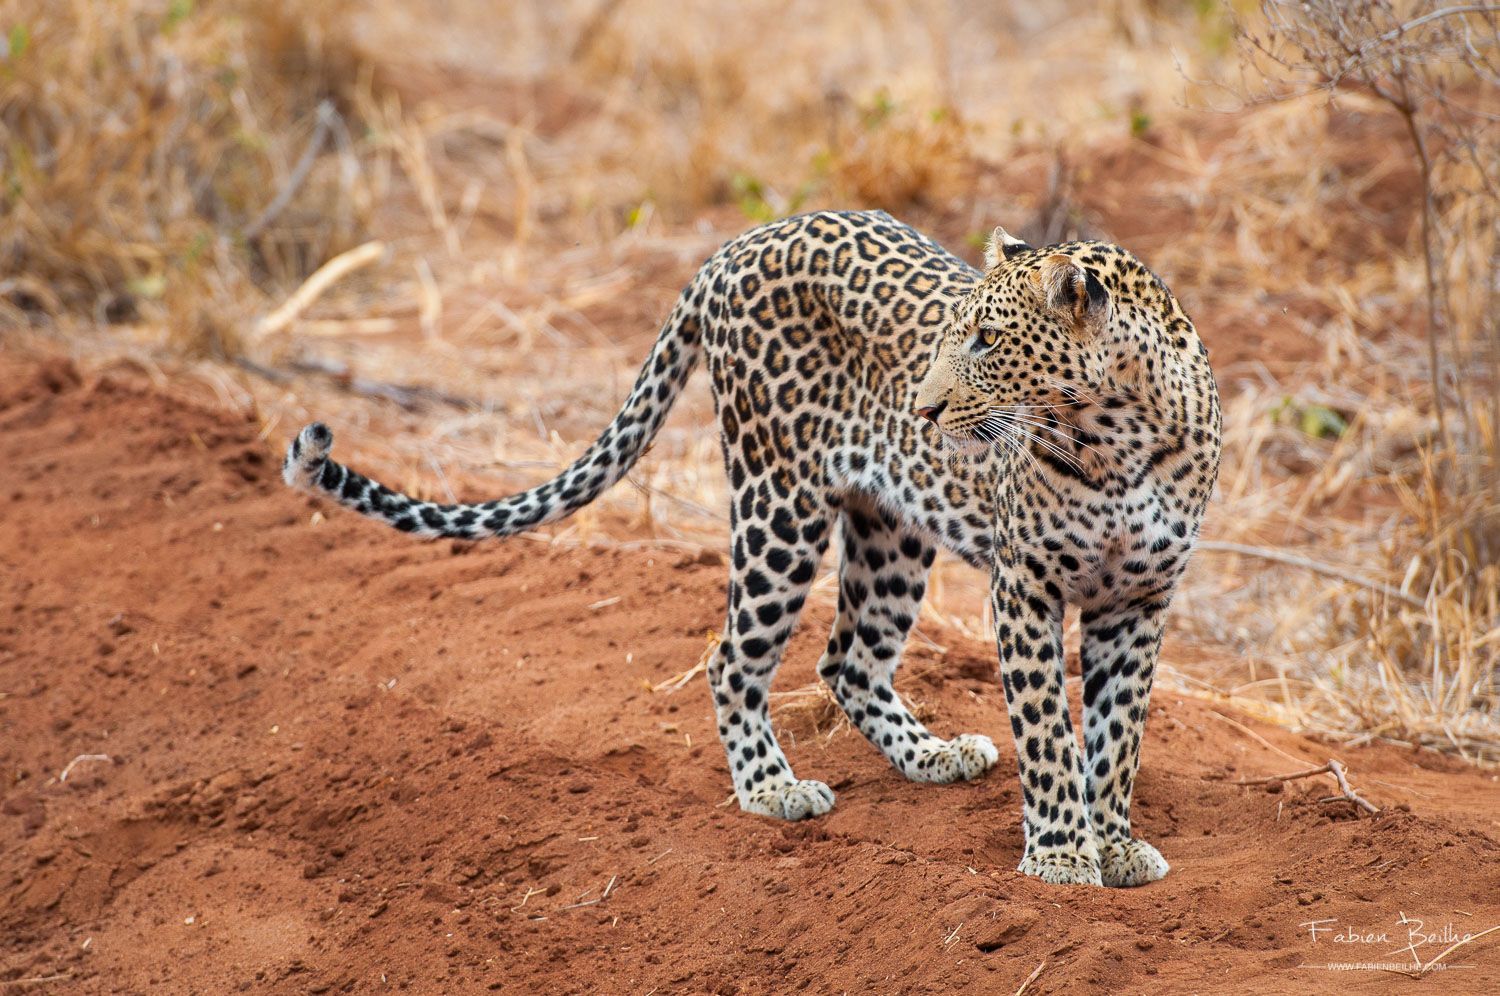 Le même léopard photographié juste après